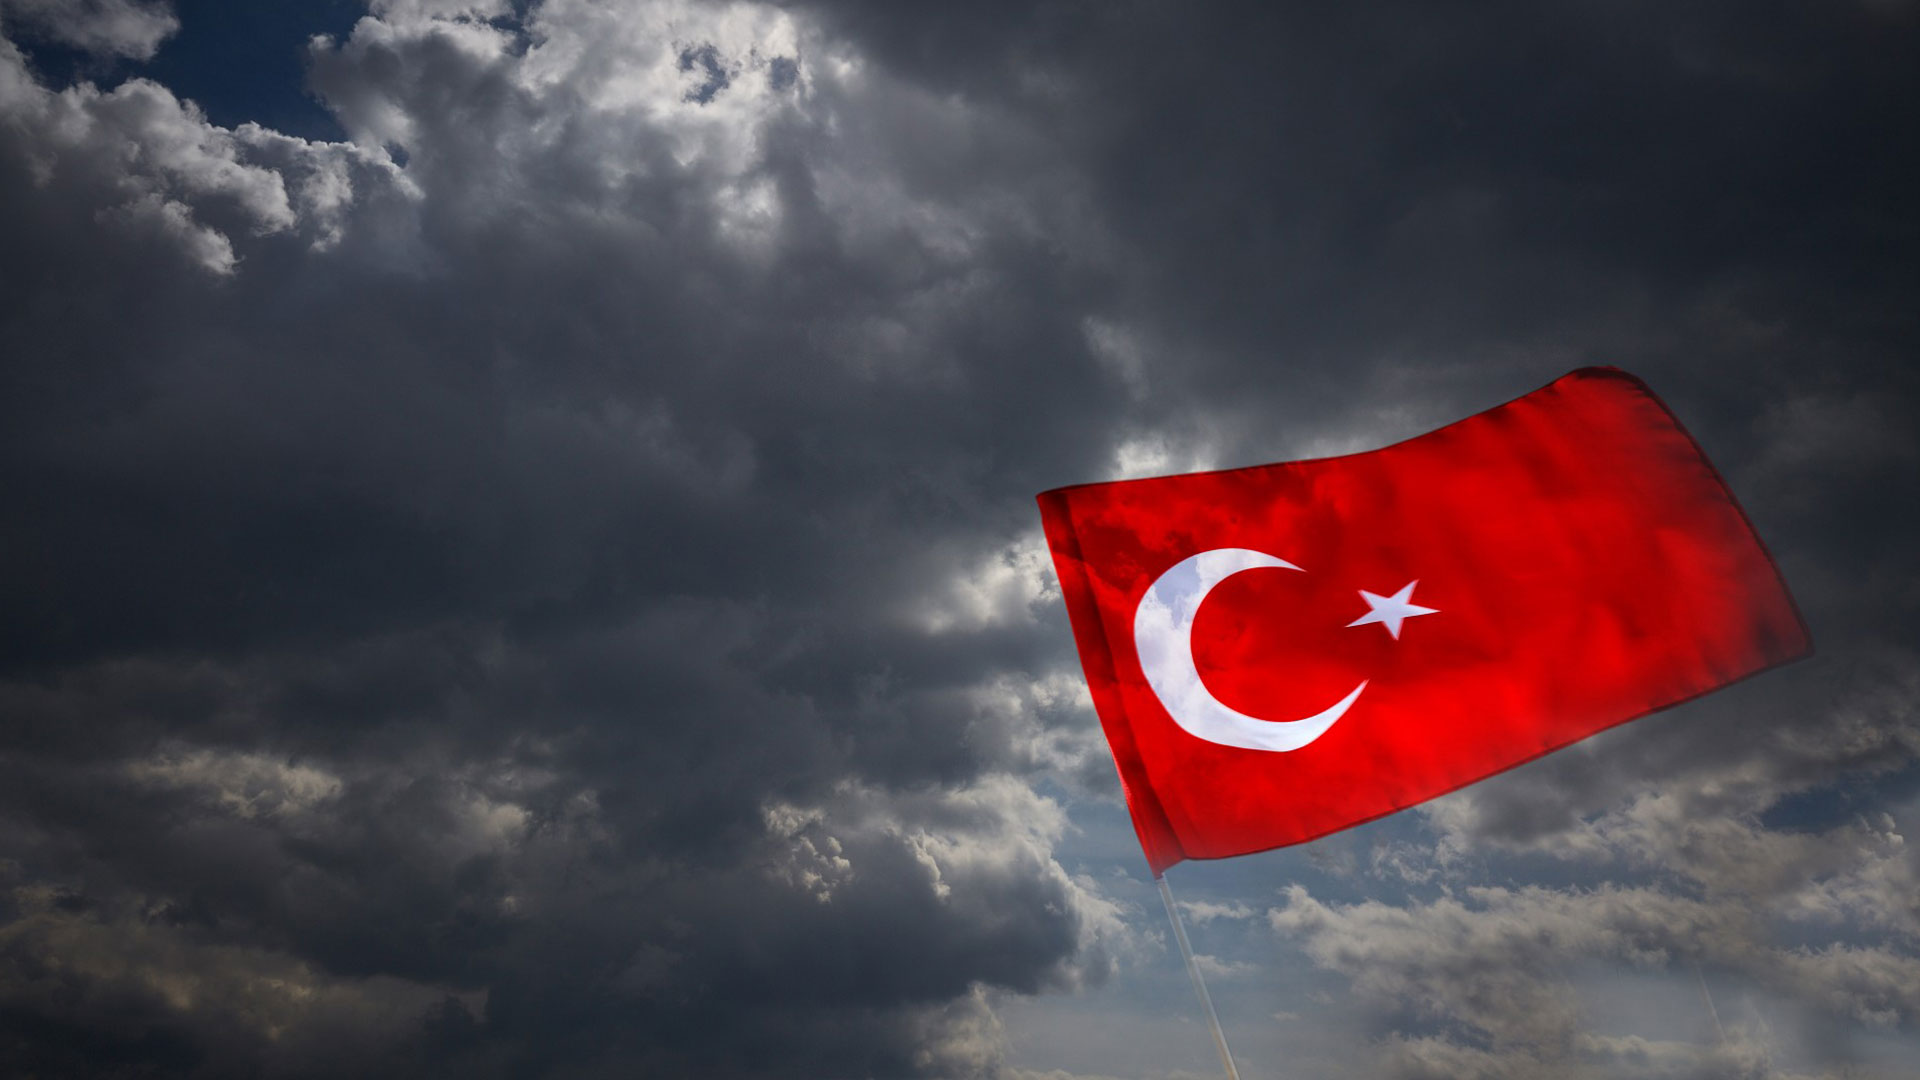 turk bayragi resimleri 2020 14